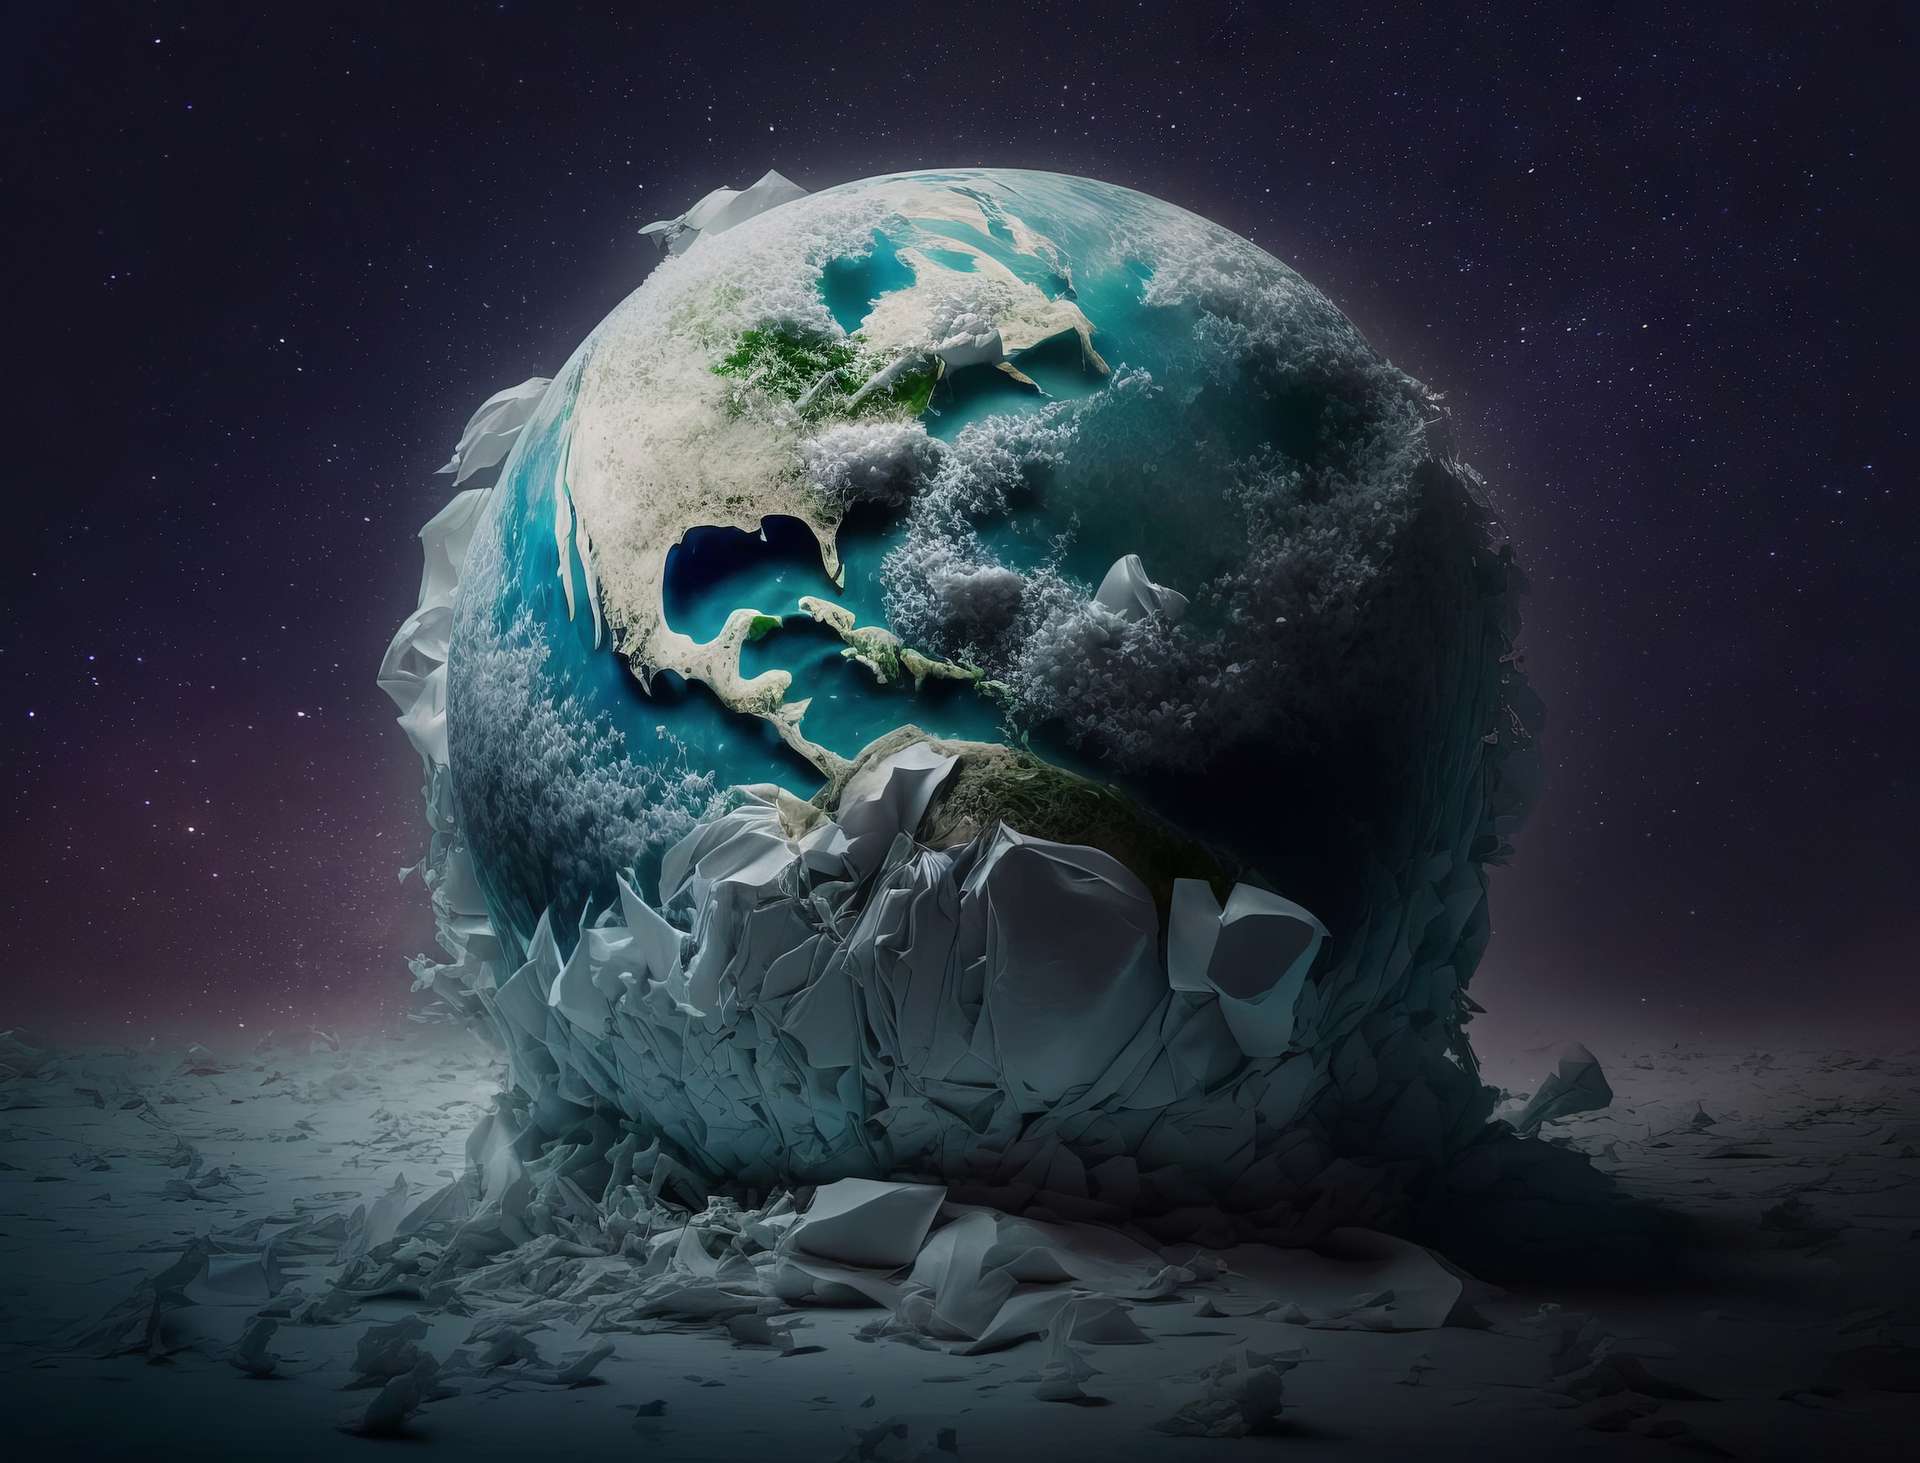 L’énigme de la Terre boule de neige suivie d’un tournant majeur dans son histoire du vivant